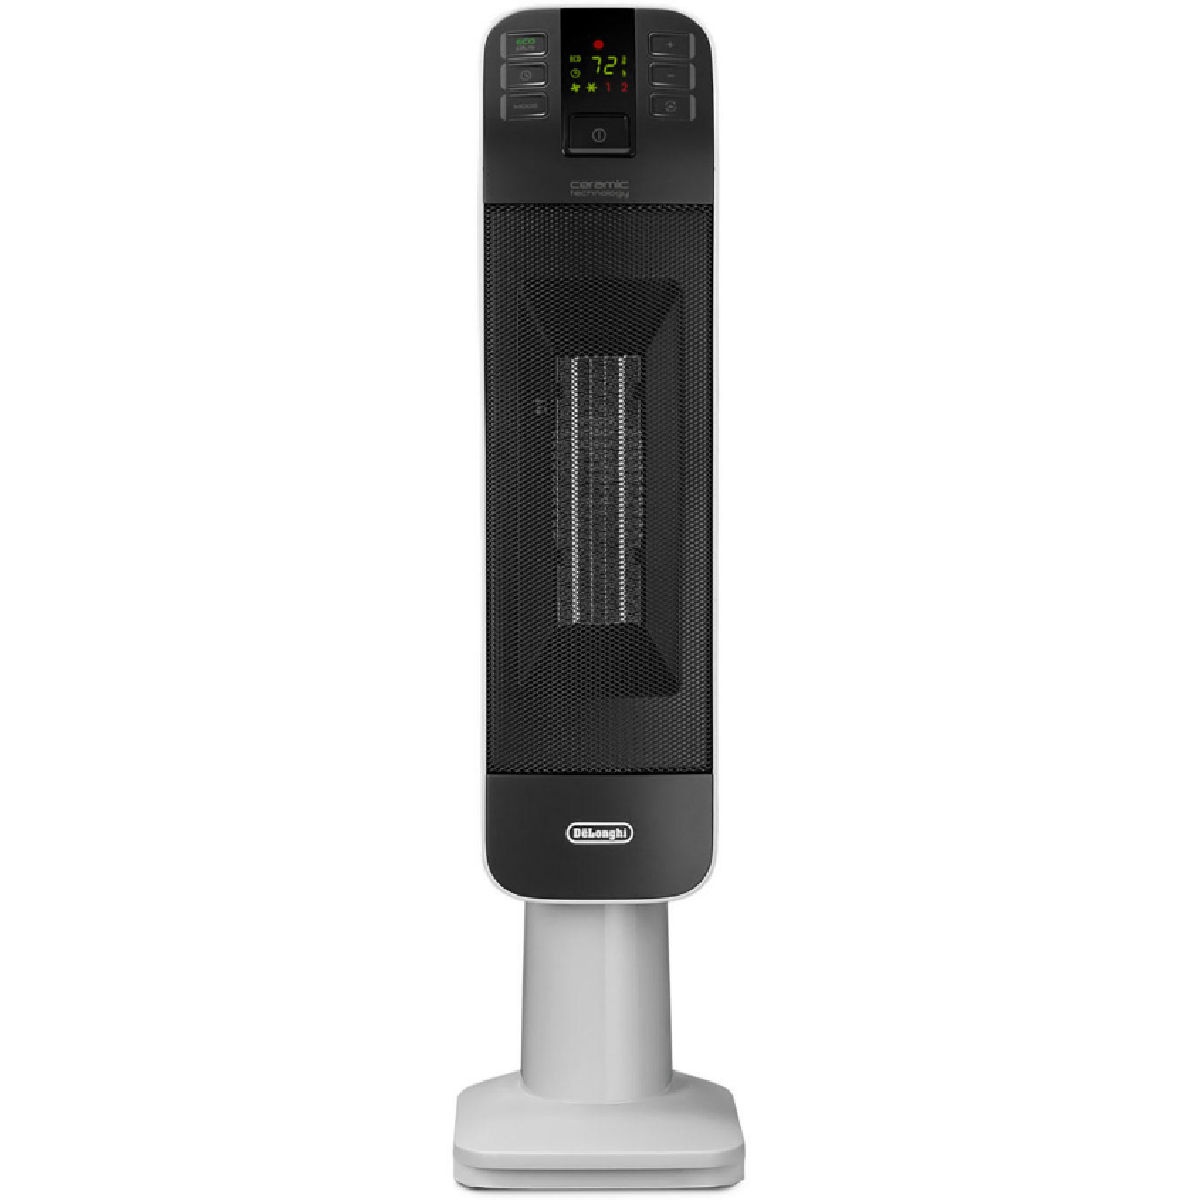 DeLonghi HFX66V15C Digital Tower Ceramic Heater